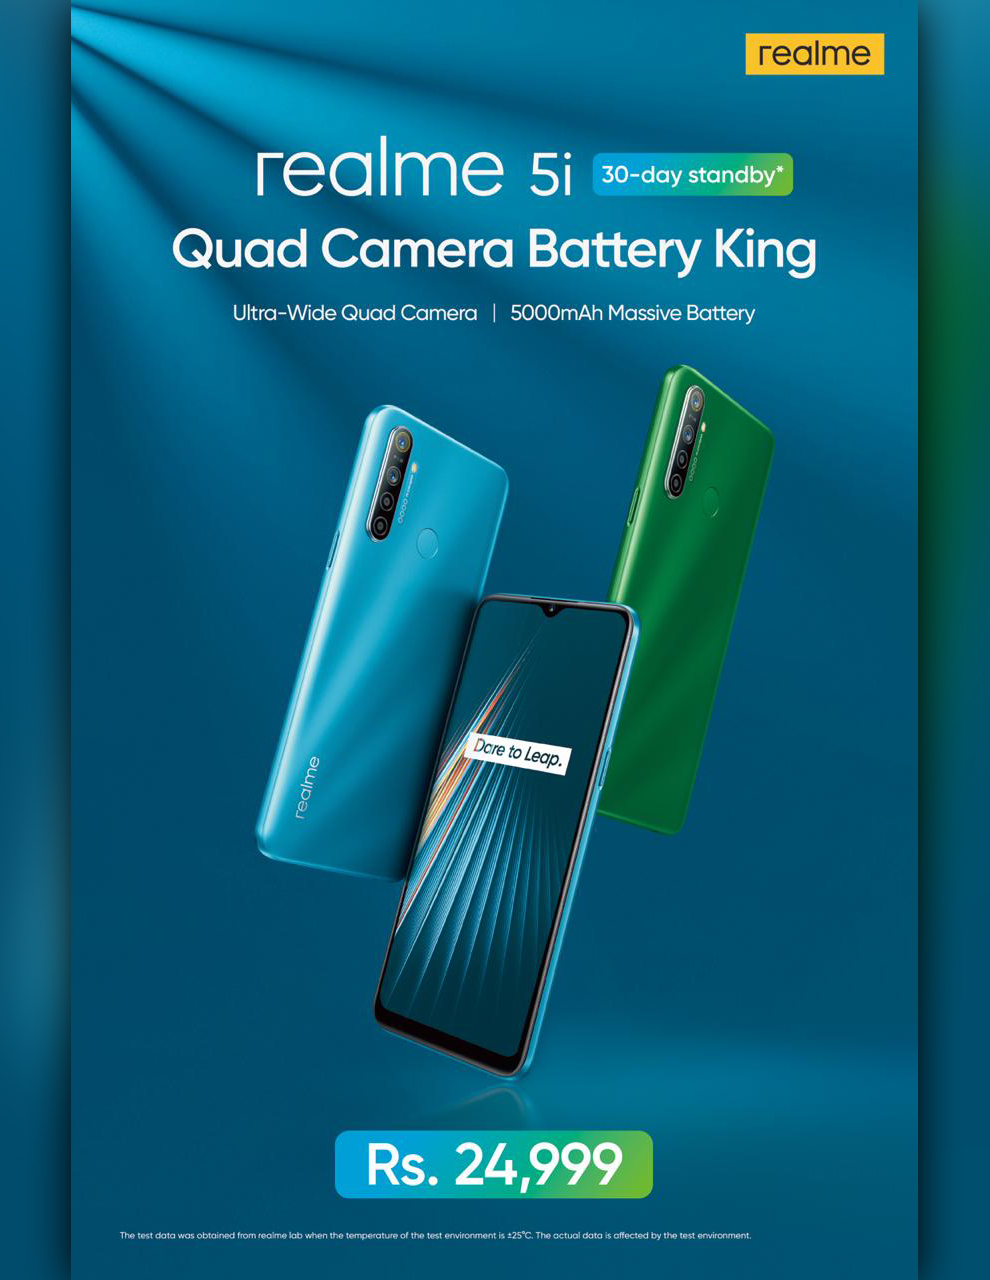 Realme 5i — Quad Camera Battery King